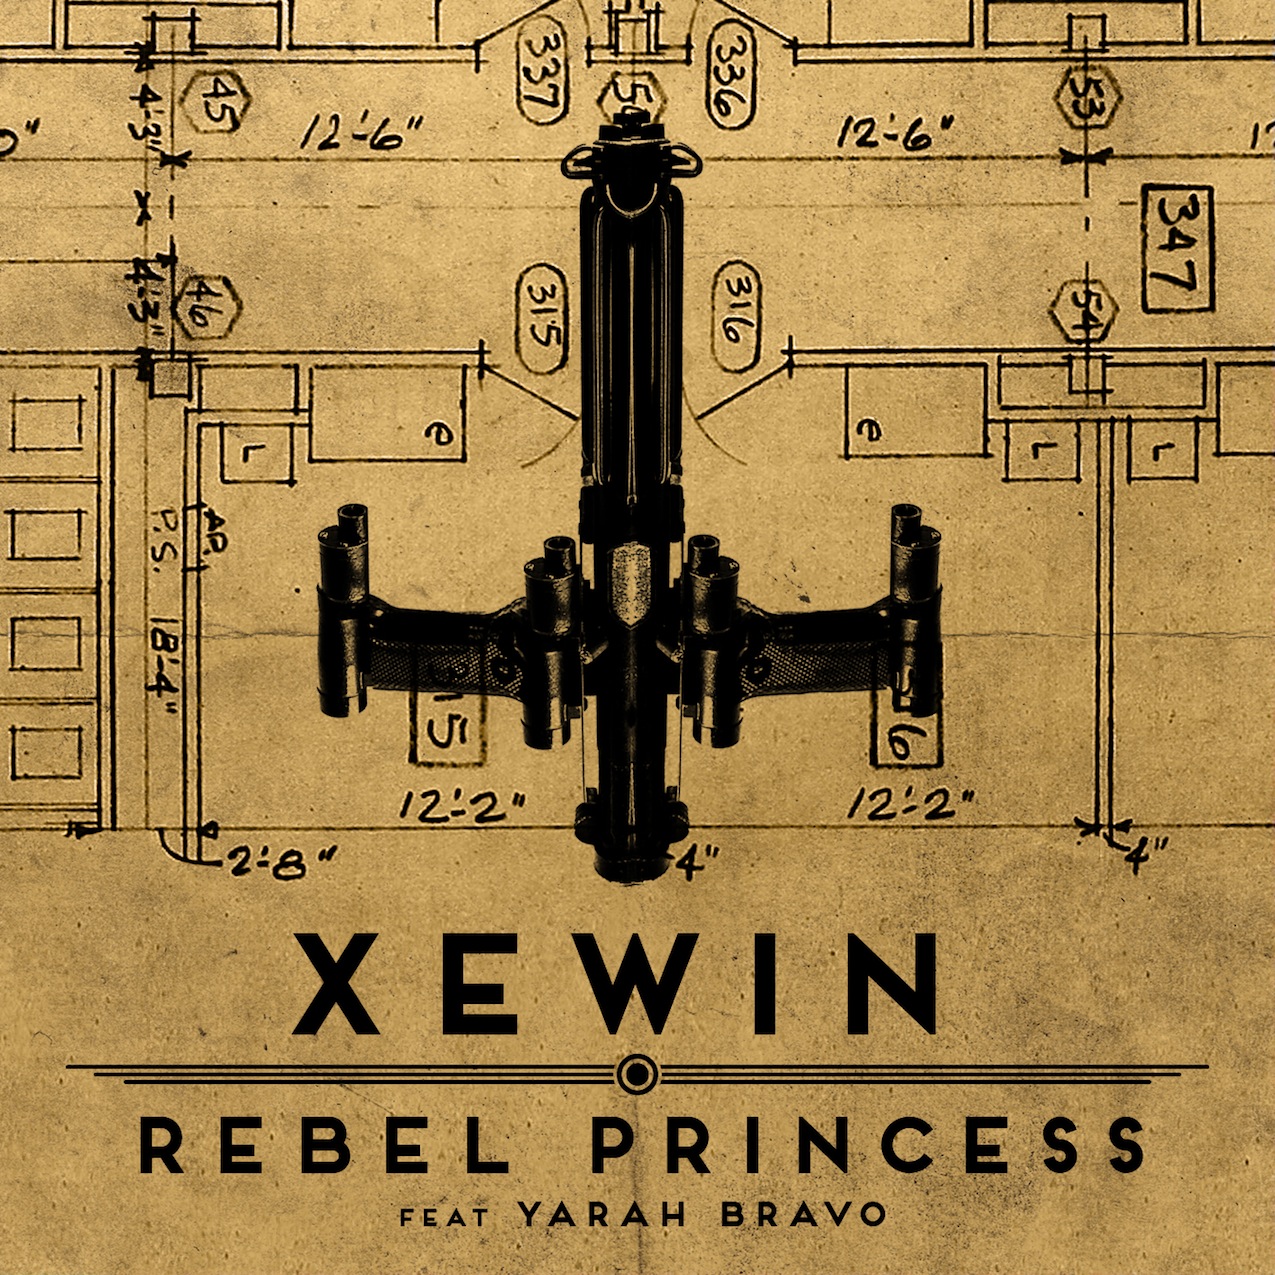 Xewin Rebel Princess